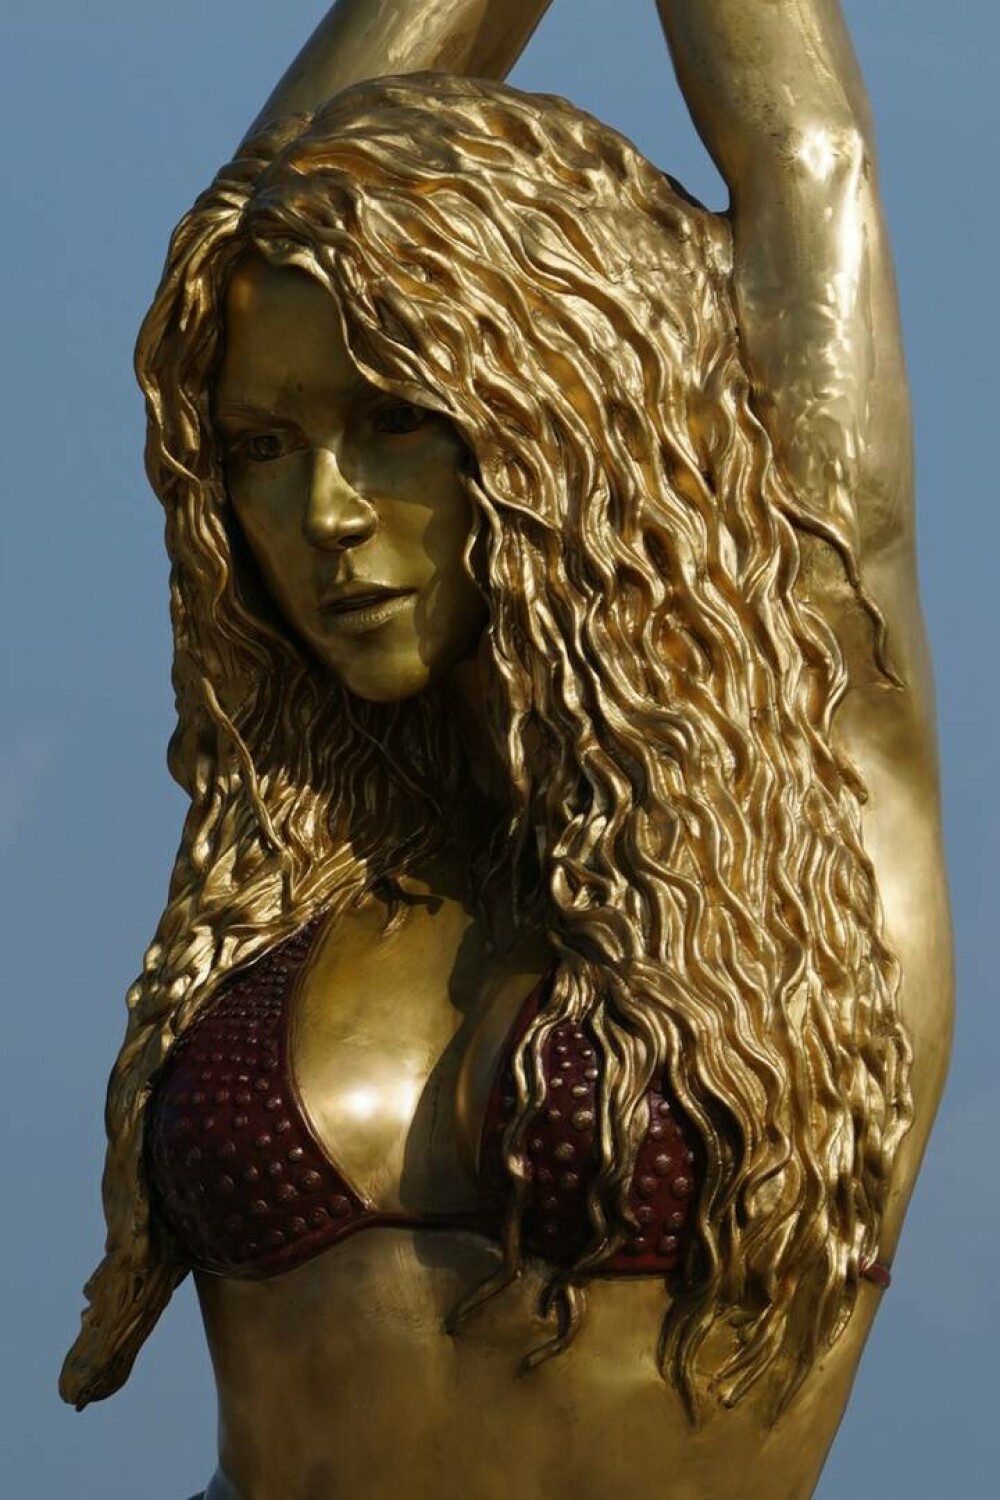 Shakira are statuie în orașul său natal. Monumentul are o înălțime impresionantă | GALERIE FOTO - Imaginea 2